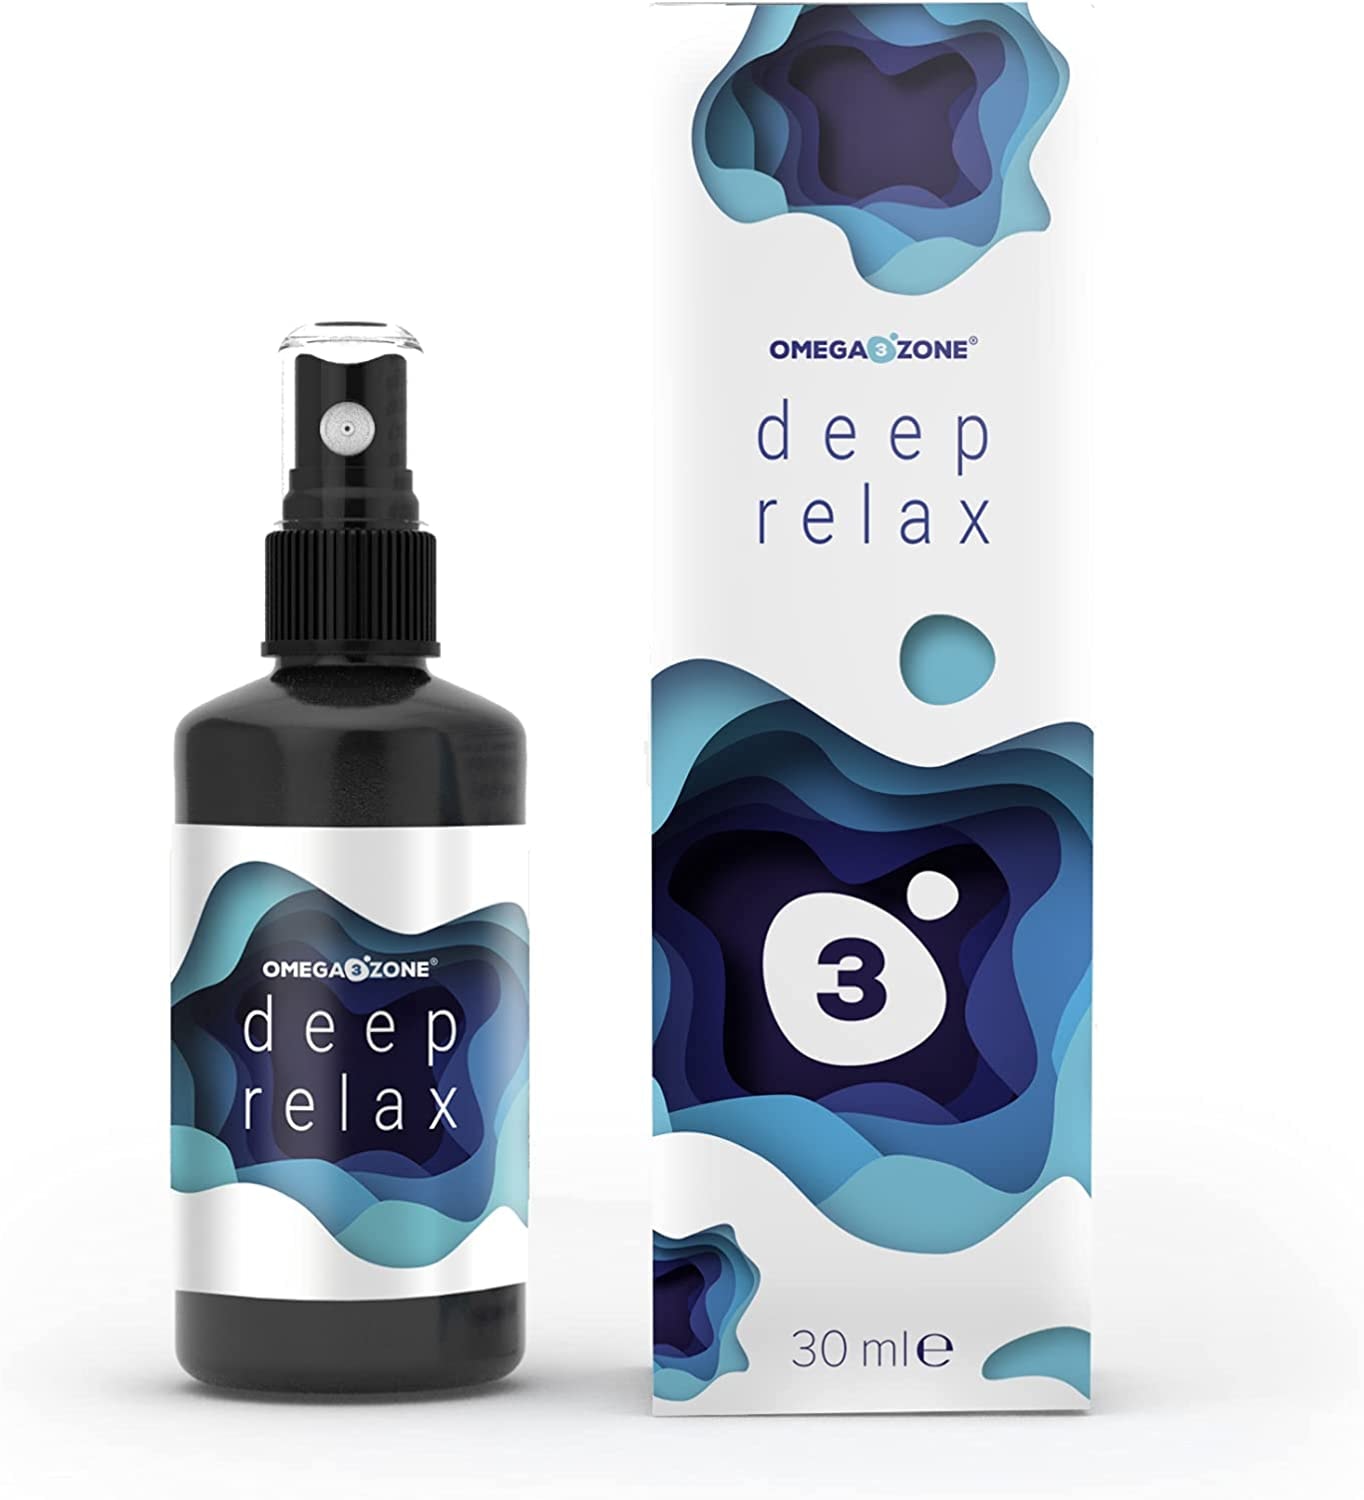 omega3zone Deep Relax Melatonin Einschlafspray - Premium Melatonin Spray als Einschlafhilfe - Natürliches Schlafspray mit Vitamin B Komplex - Sleep Spray ohne Alkohol - 1 x 30ml